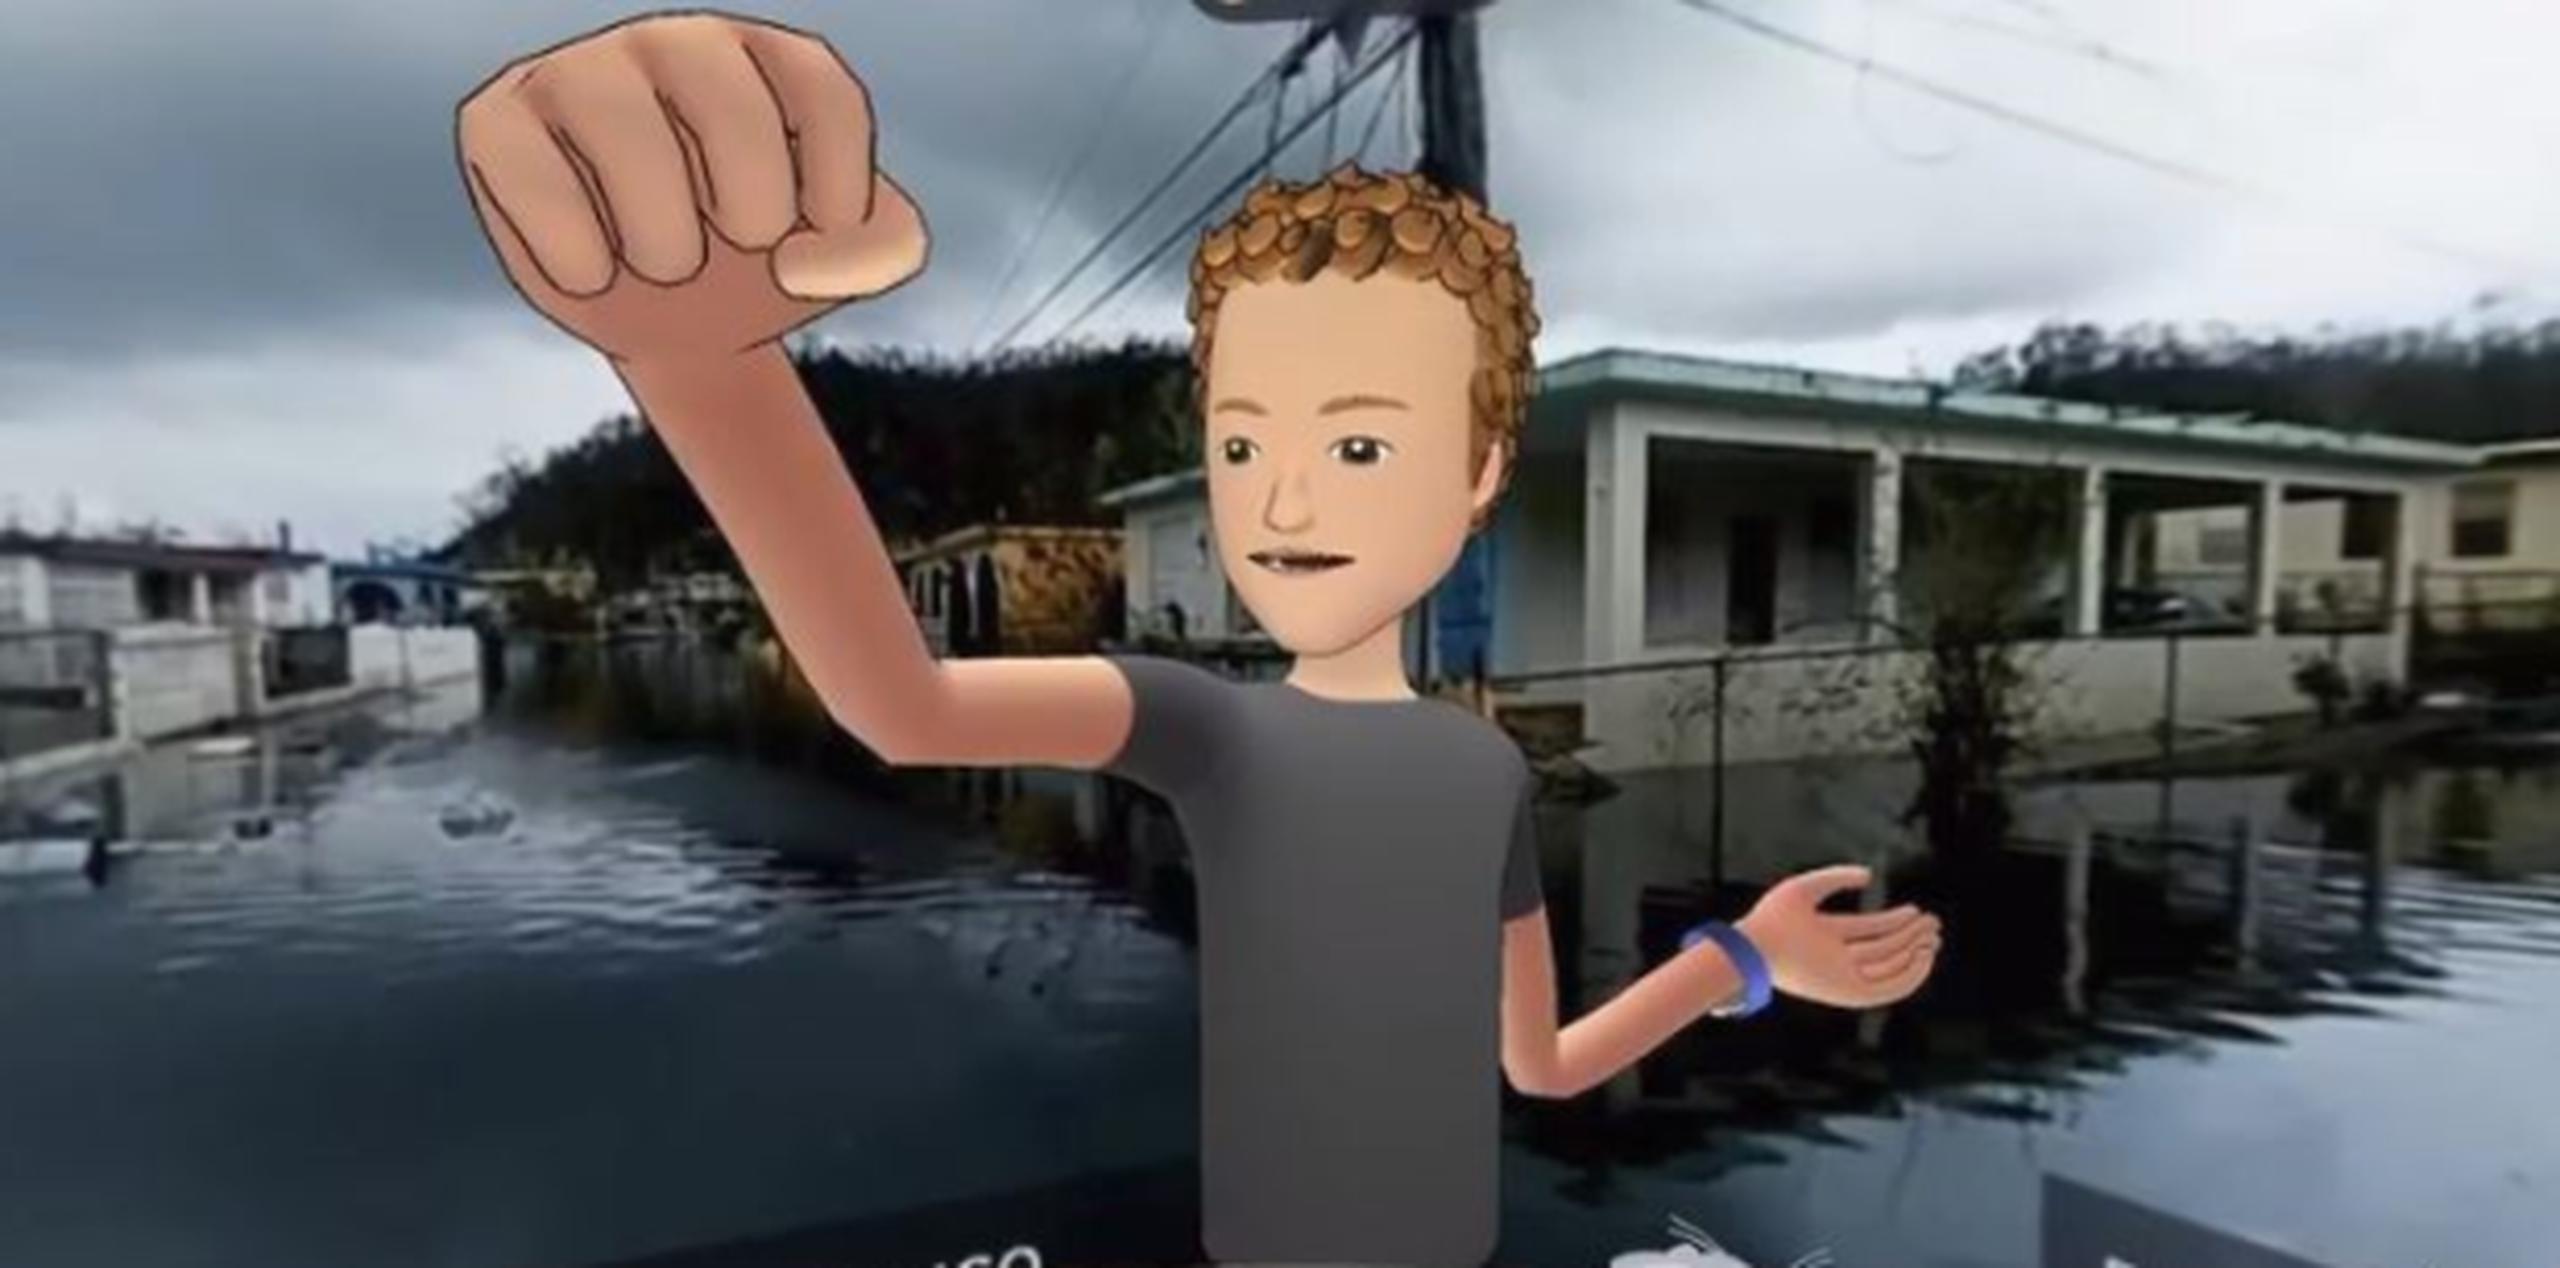 El "viaje" se emitió en directo en un vídeo de 360 grados. En la foto, el avatar de Mark Zuckerberg. (Facebook)